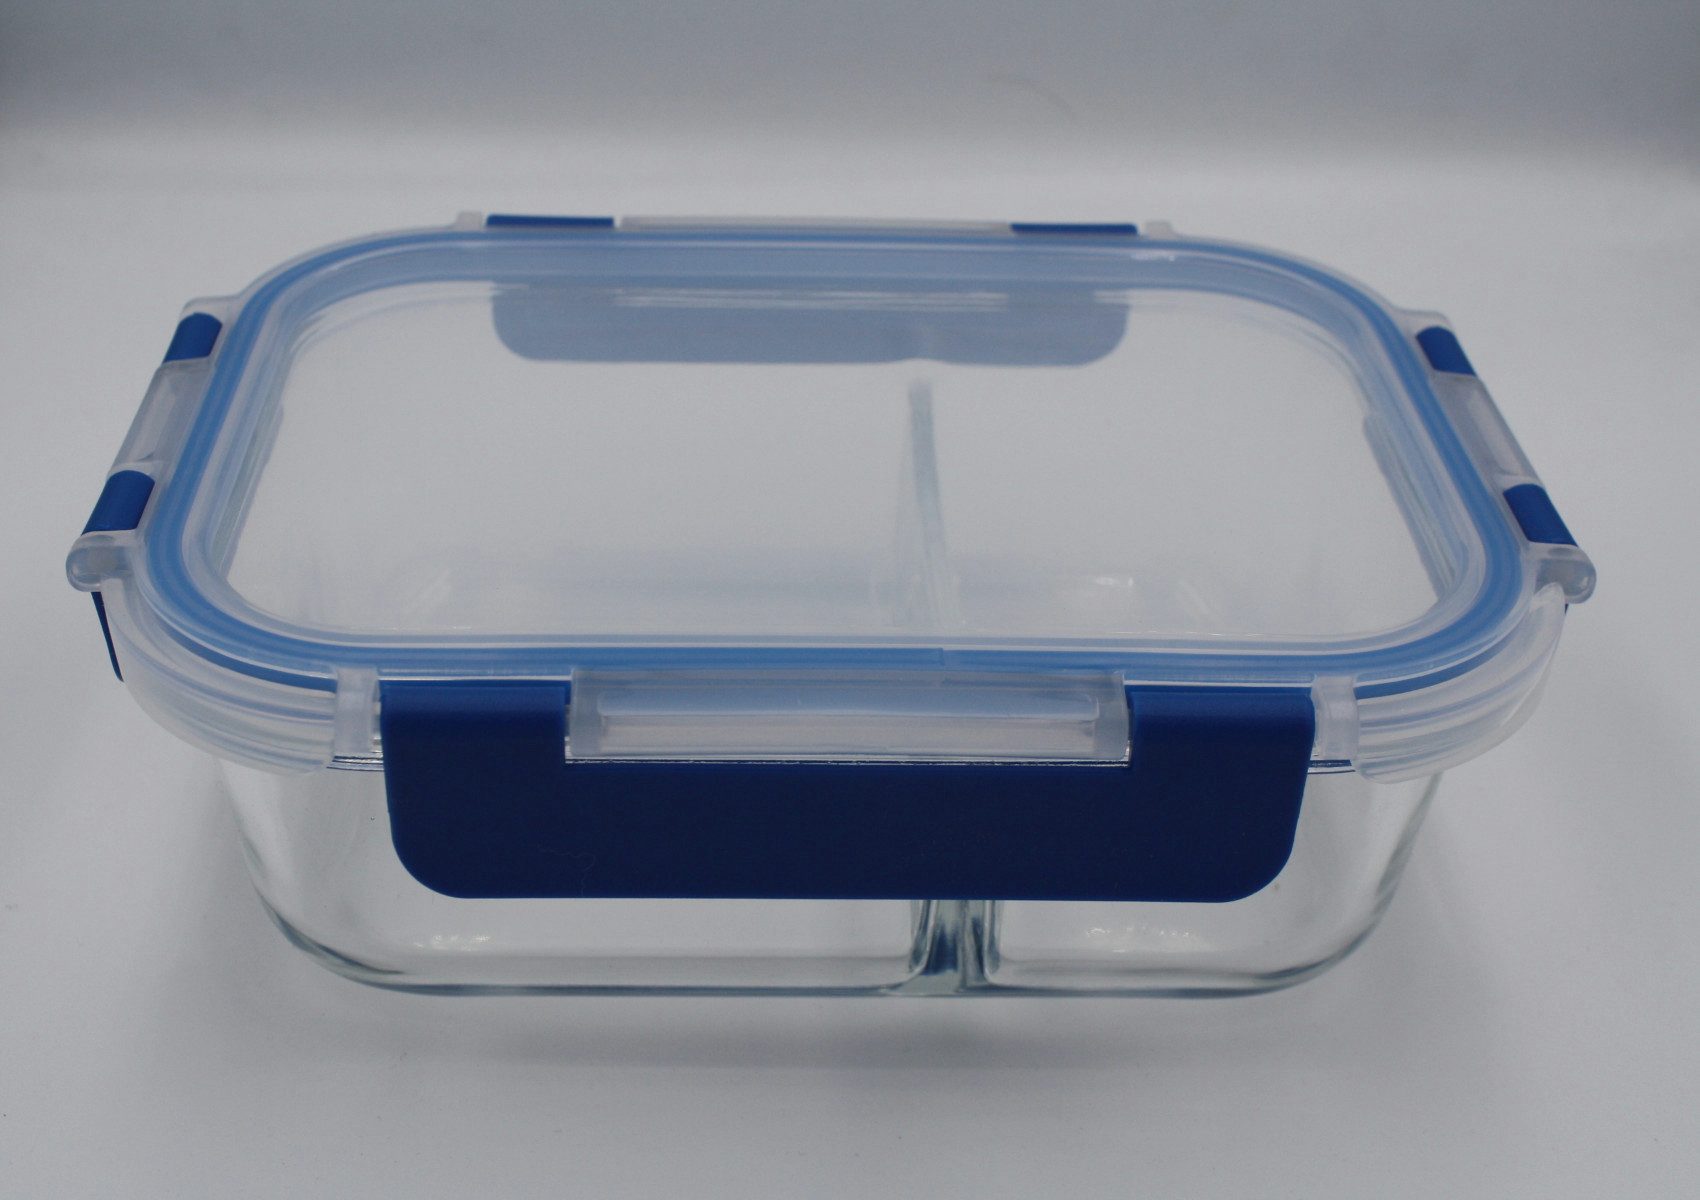 EuroStock Frischhaltedose Glas-Frischhaltedosen mit 2 Fächern inkl. Deckel